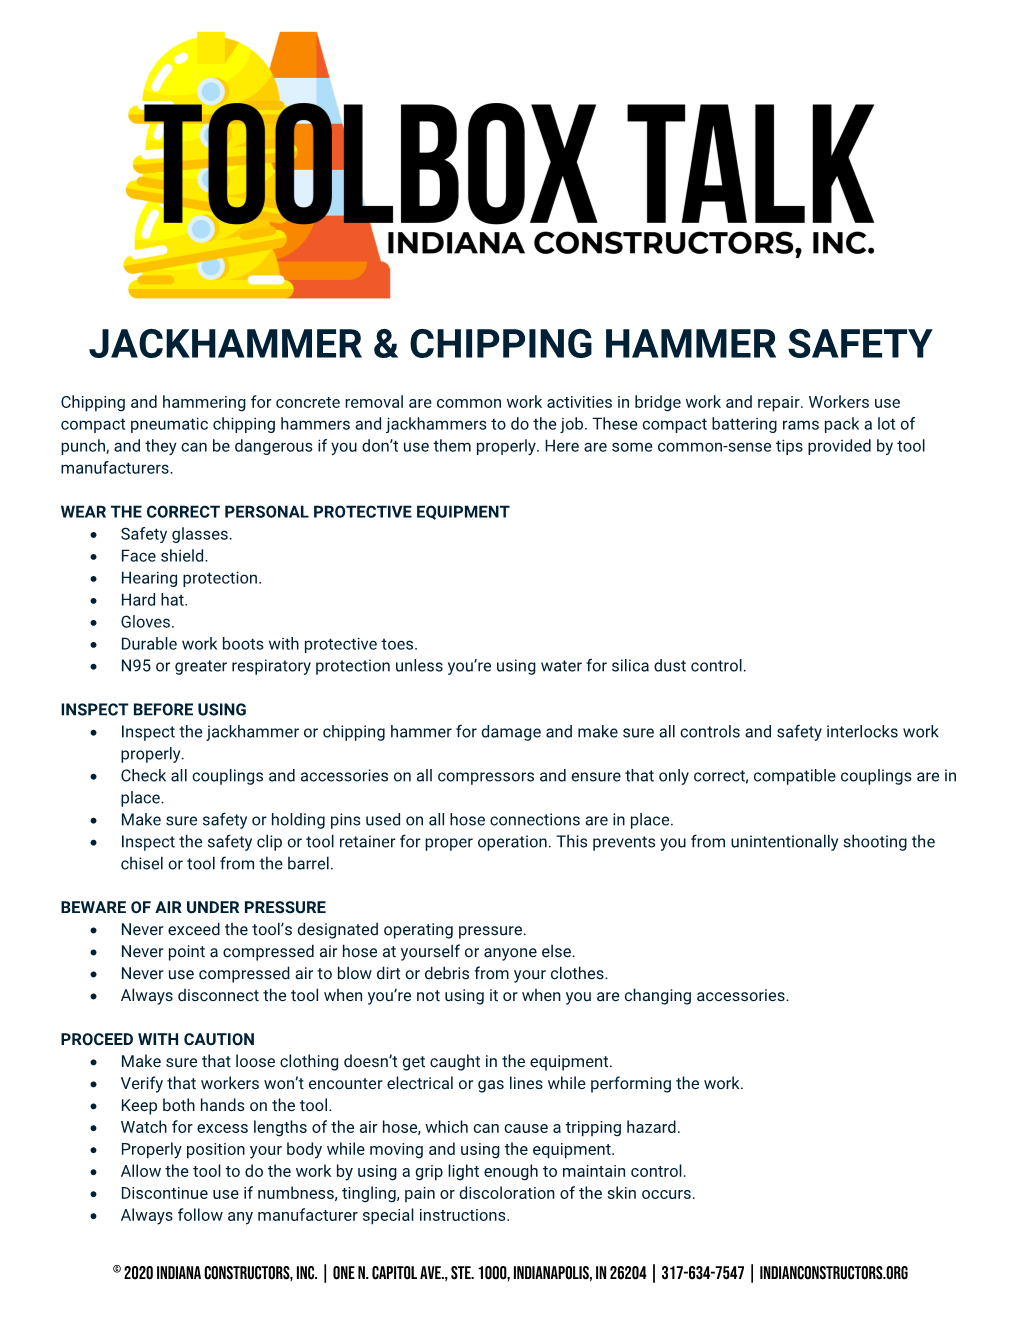 Jackhammer & Chipping Hammer Safety